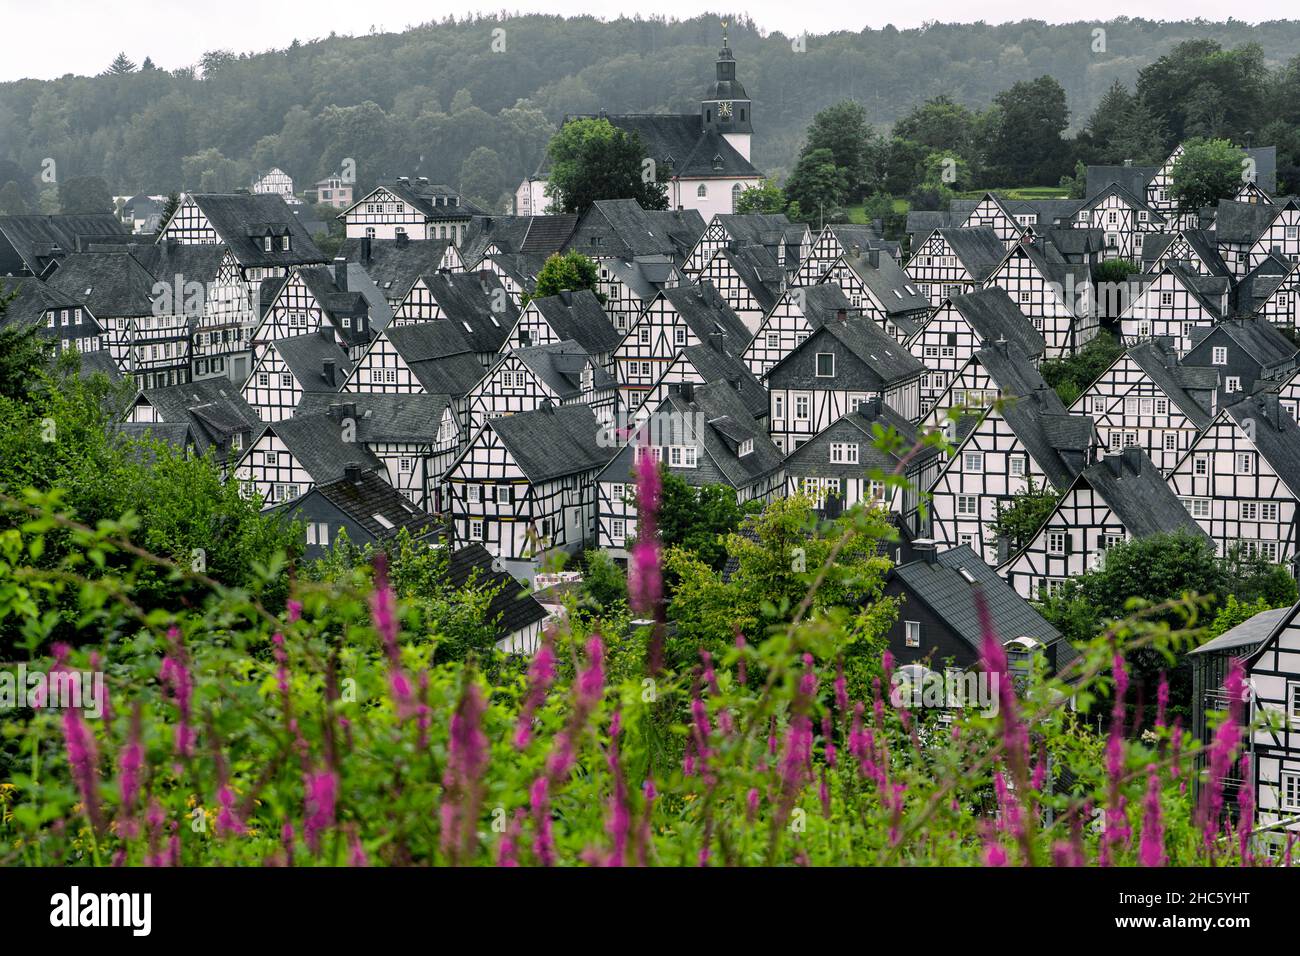 Schöne Aufnahme von schwarz-weißen Häusern in Freudenberg, Deutschland Stockfoto